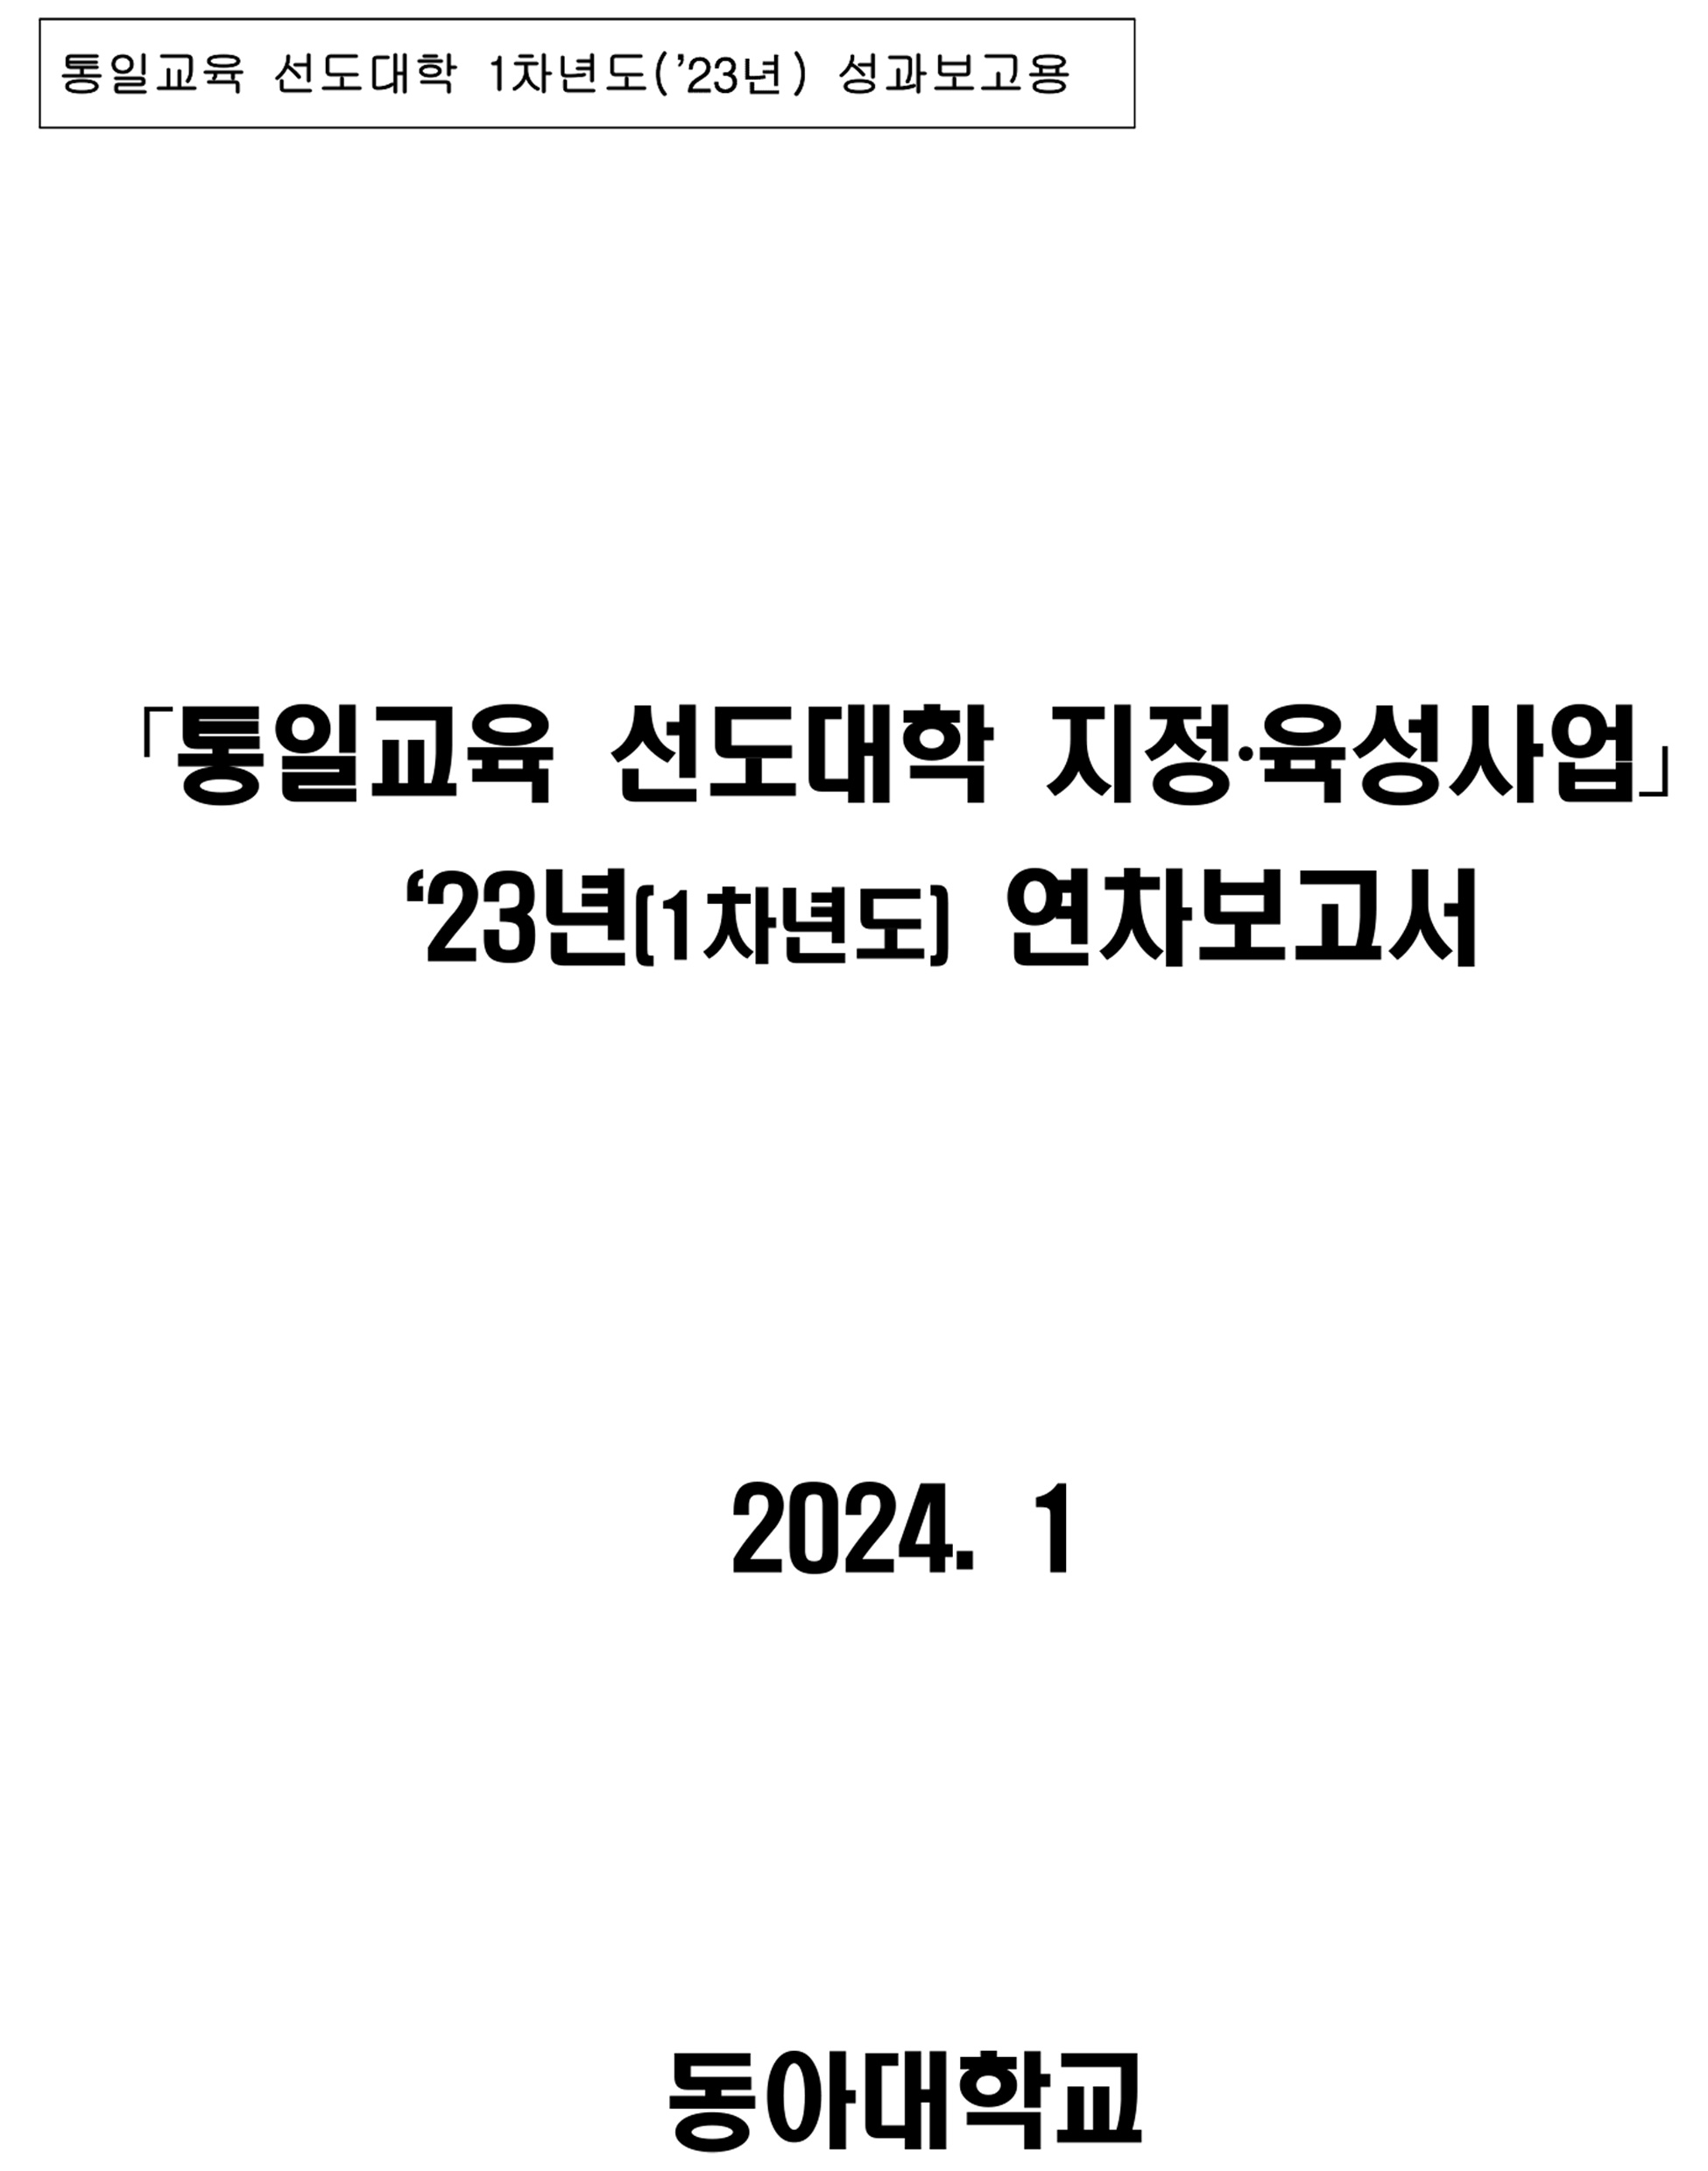 최신자료-통일교육 선도대학 2023년 성과보고서(동아대학교)